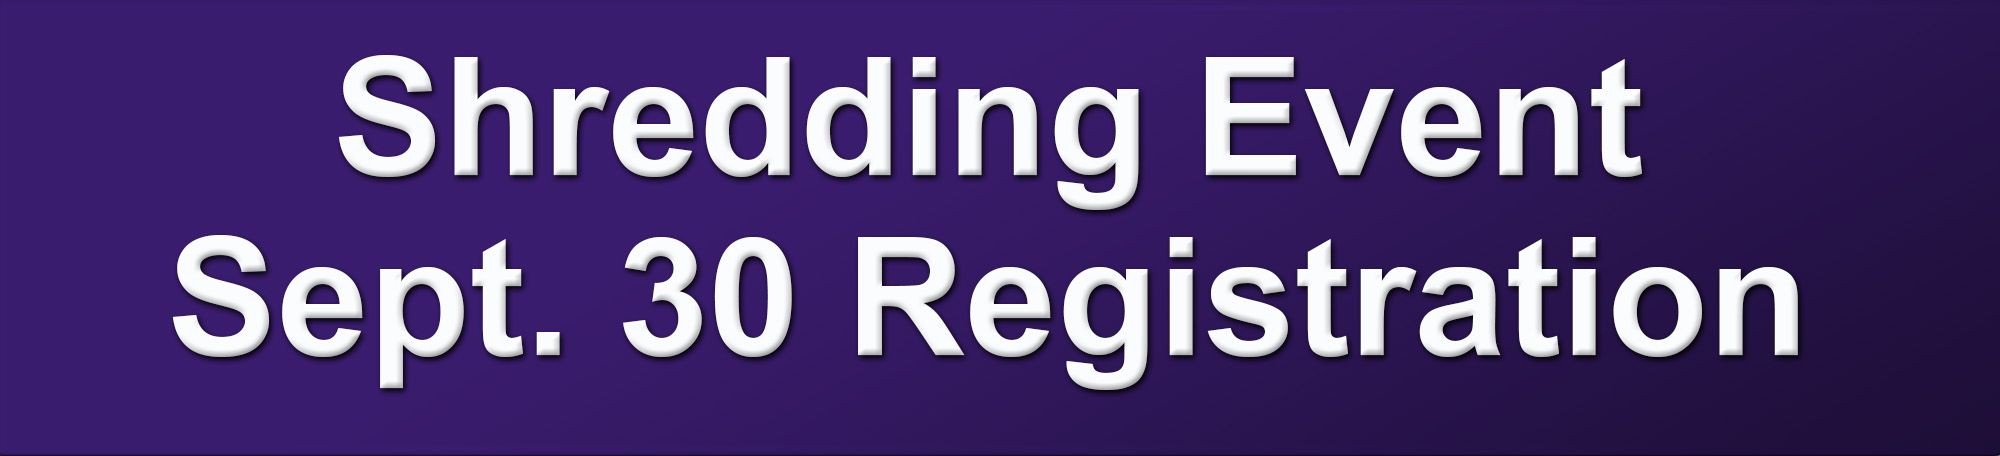 Shredding Event September 30 Registration